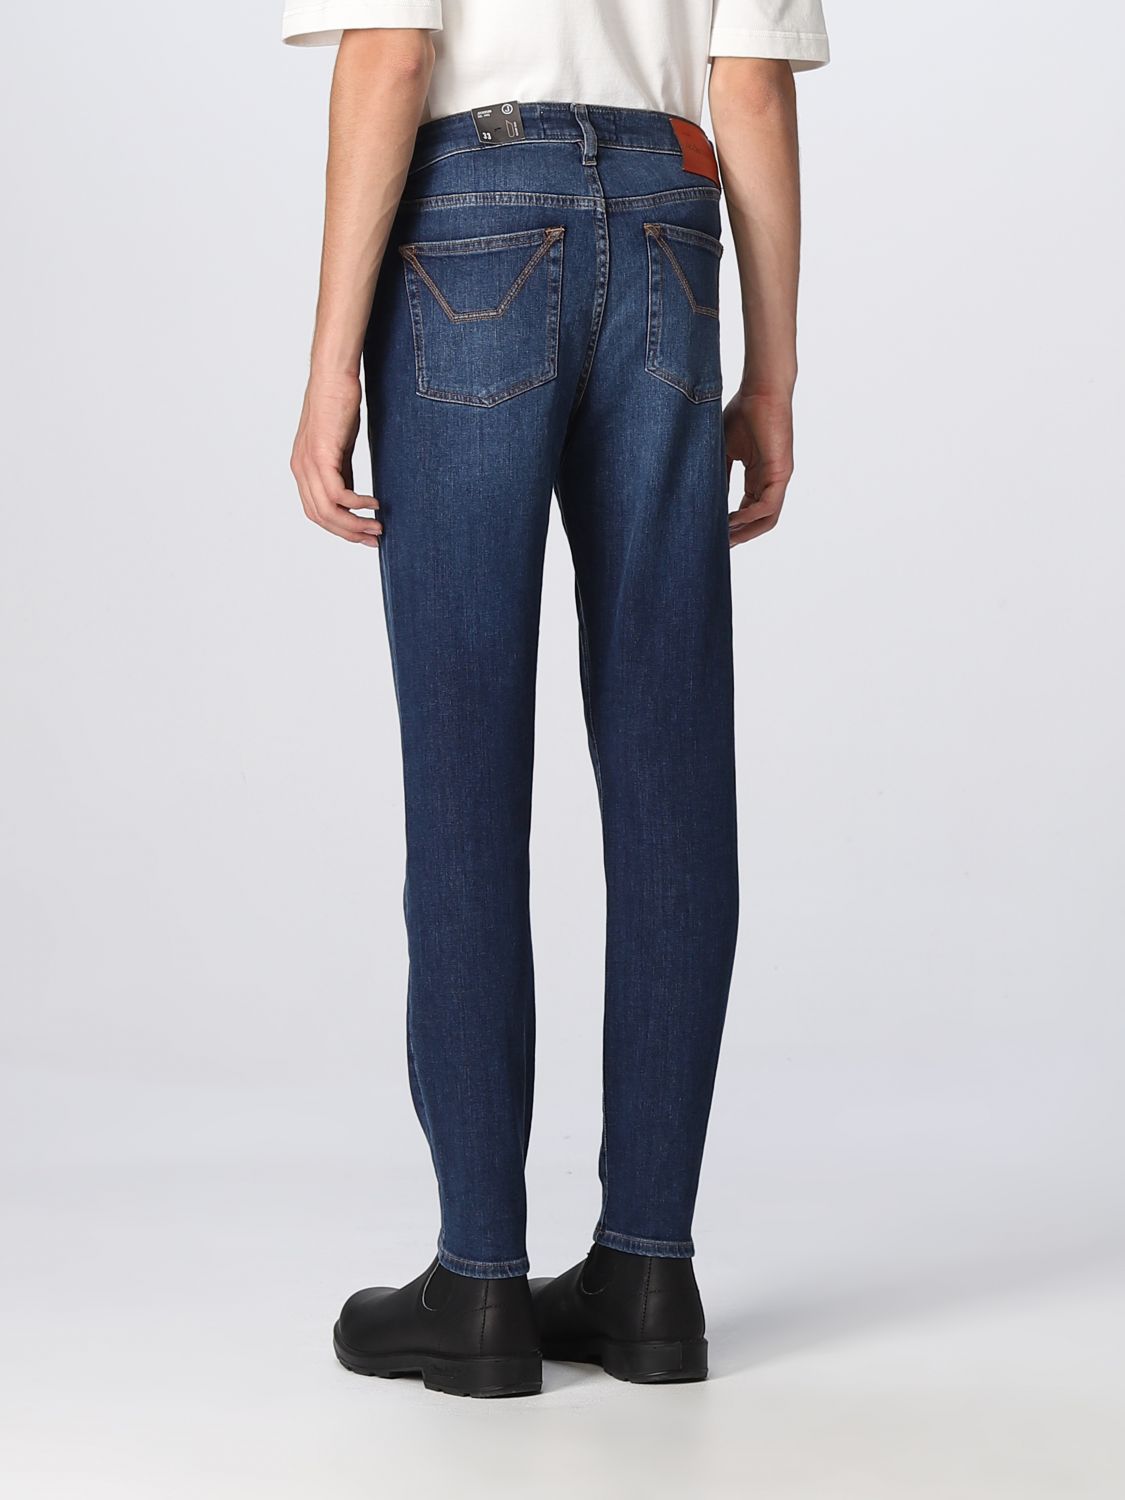 Jeans a 5 tasche in Giglio.com Abbigliamento Pantaloni e jeans Jeans 